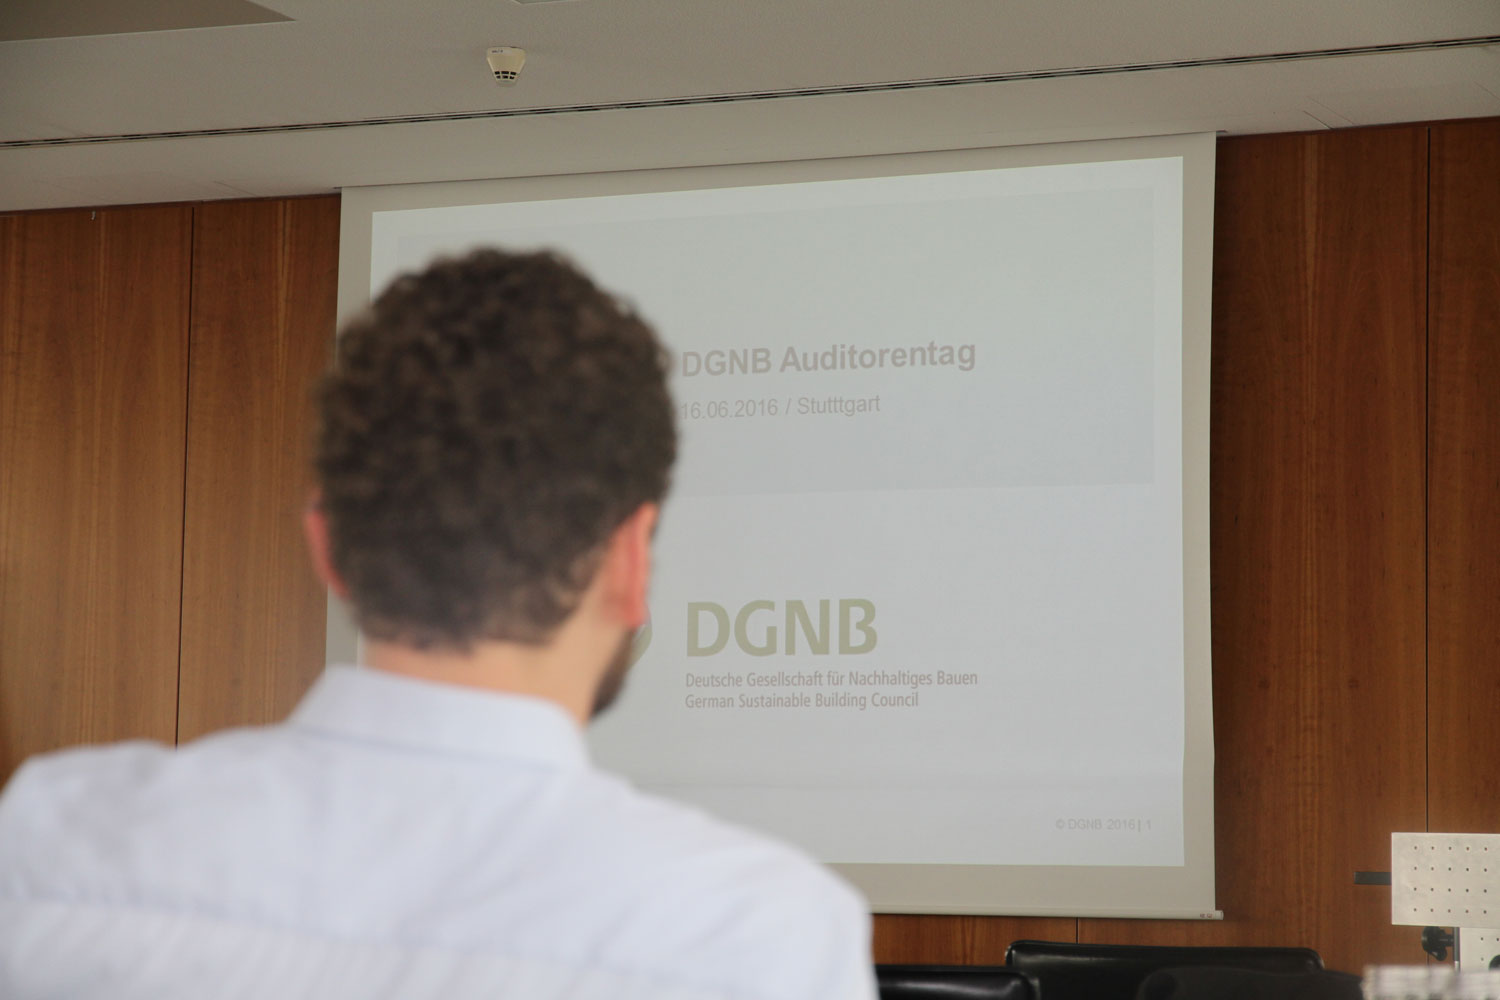 DGNB Auditorentag 2016